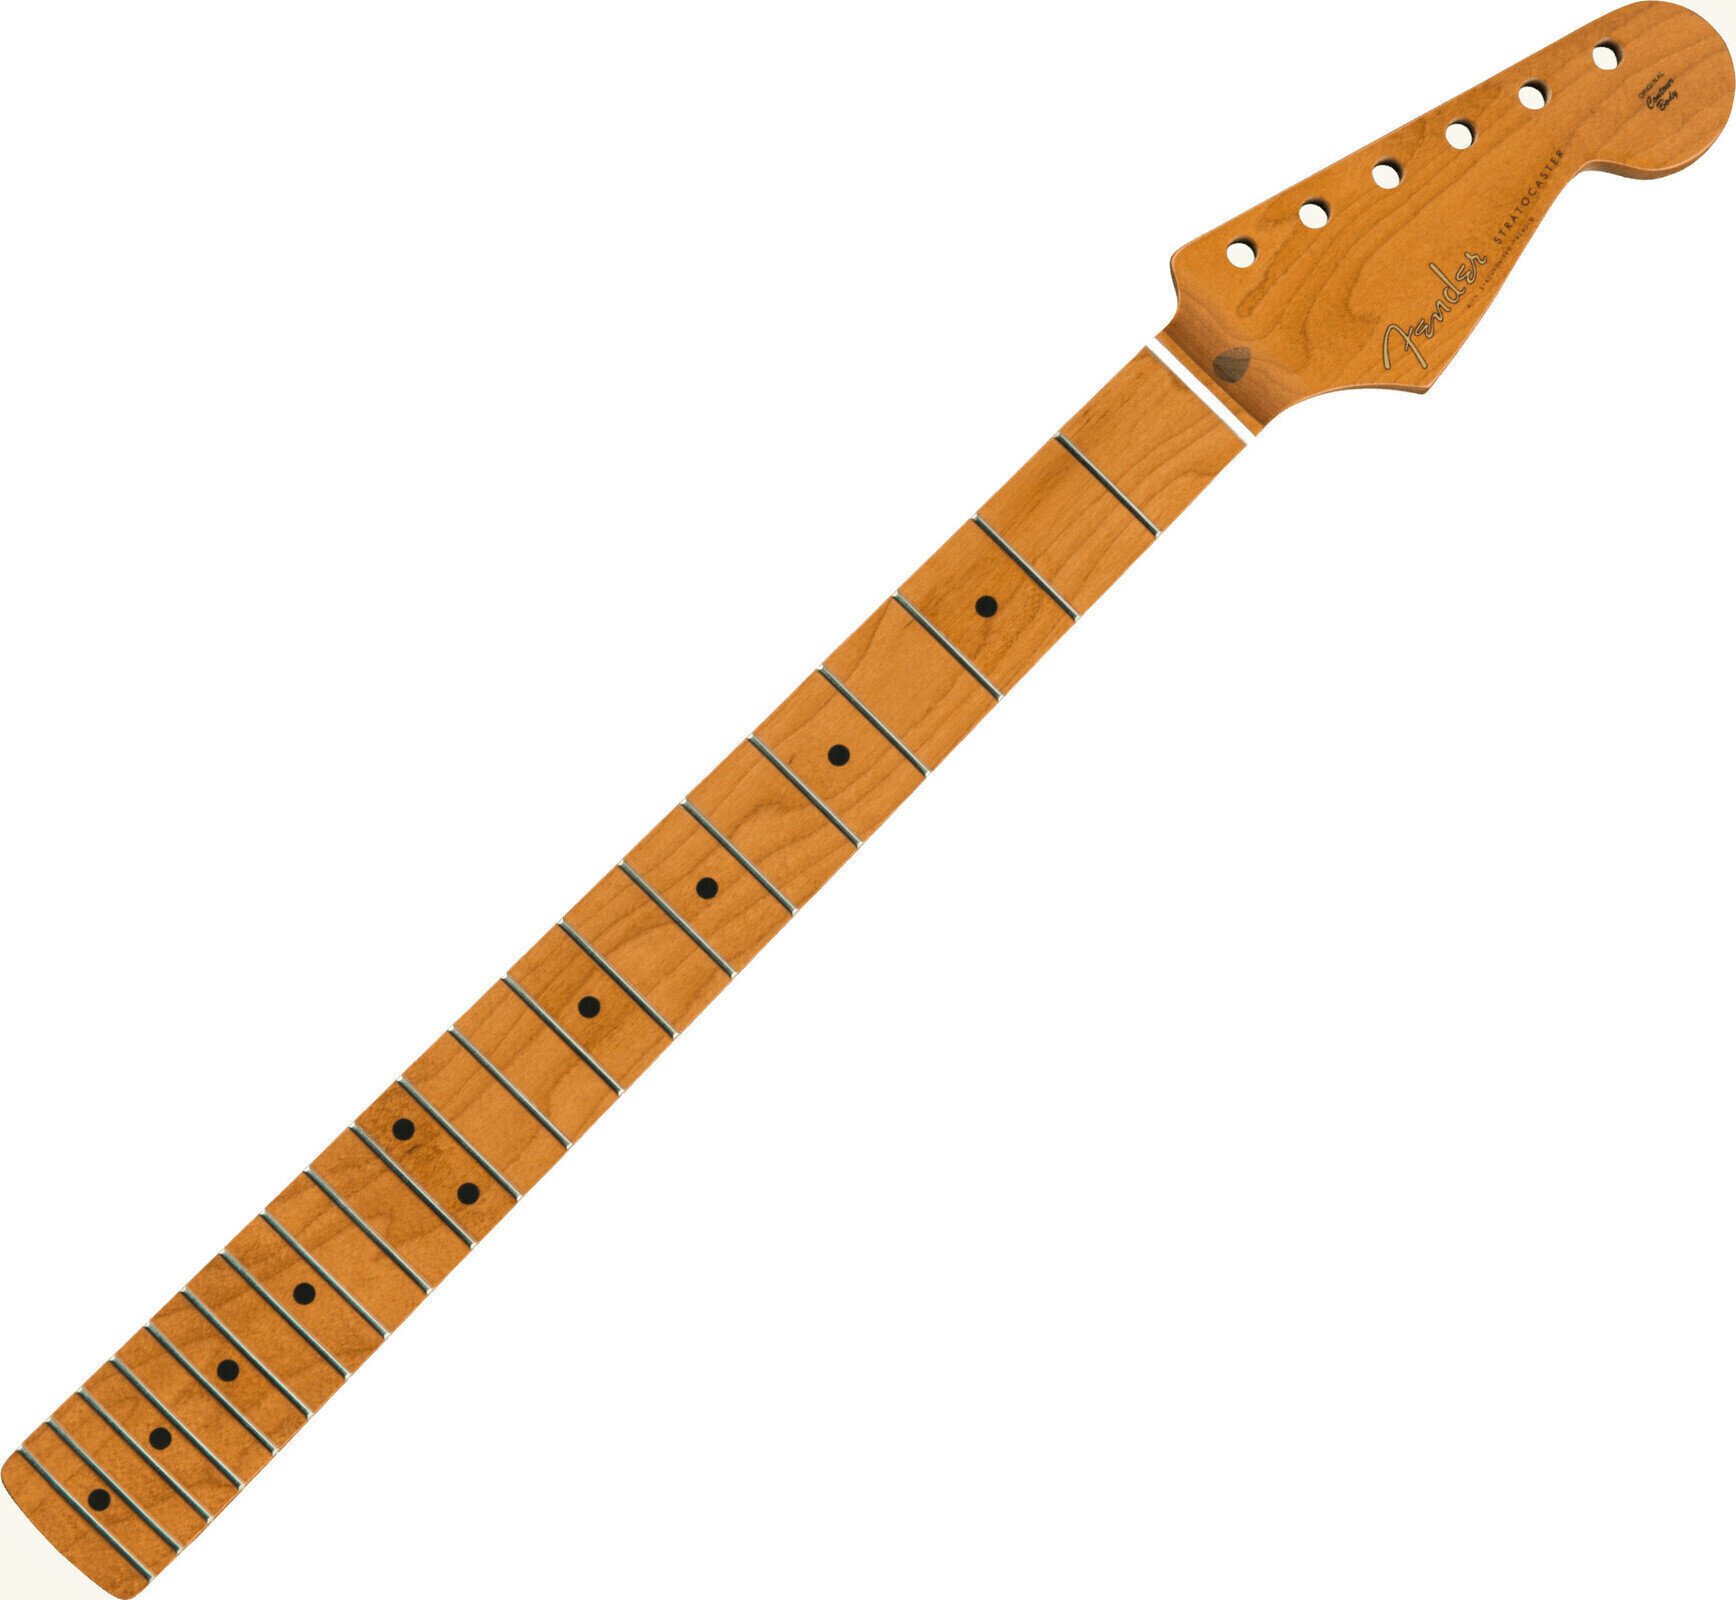 Hals für Gitarre Fender Roasted Maple Vintera Mod 50s 21 Bergahorn (Roasted Maple) Hals für Gitarre